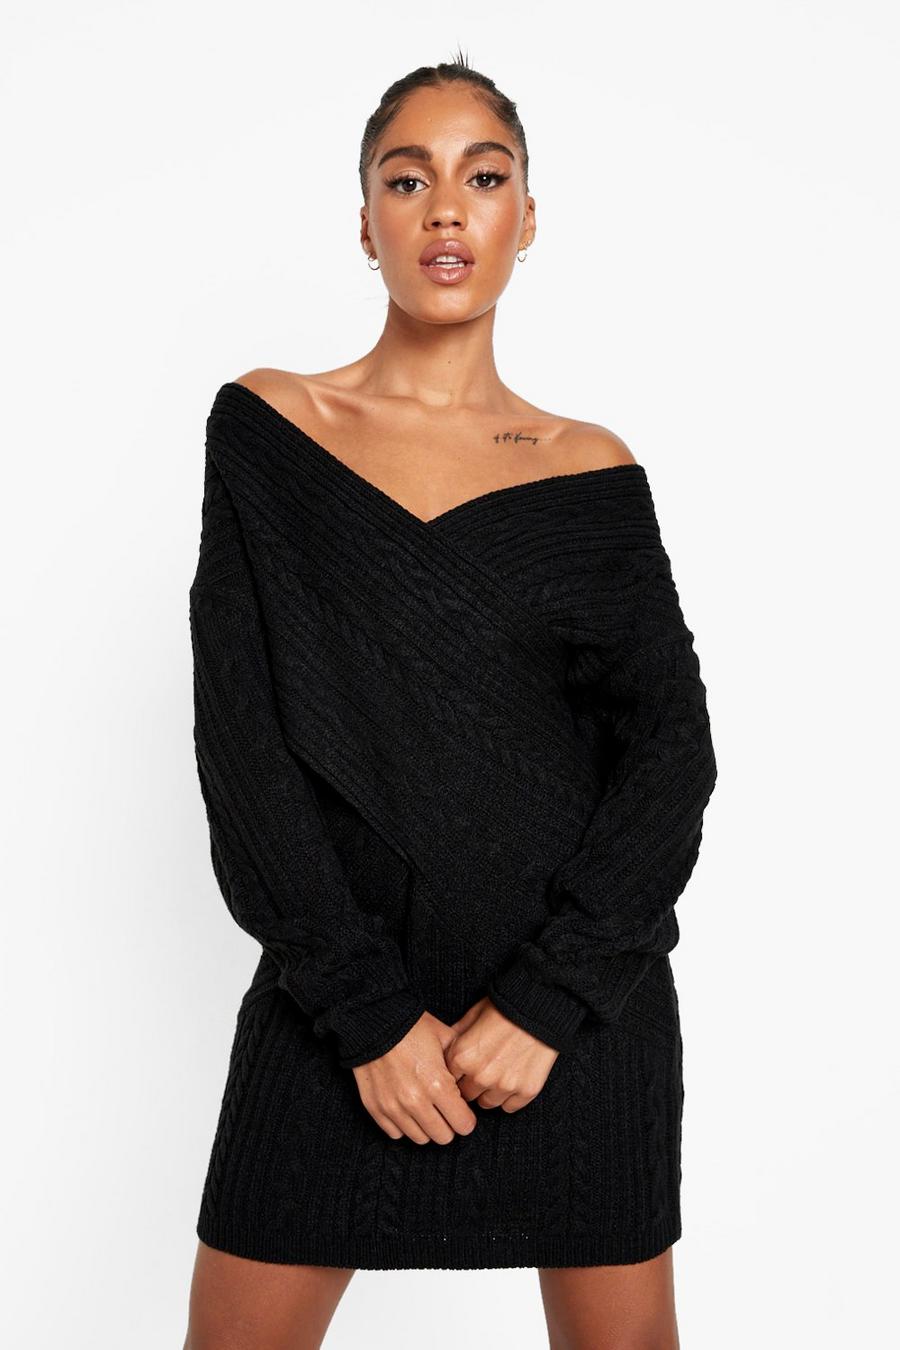 שחור nero שמלת סוודר בסריגת צמה עם כתפיים חשופות 